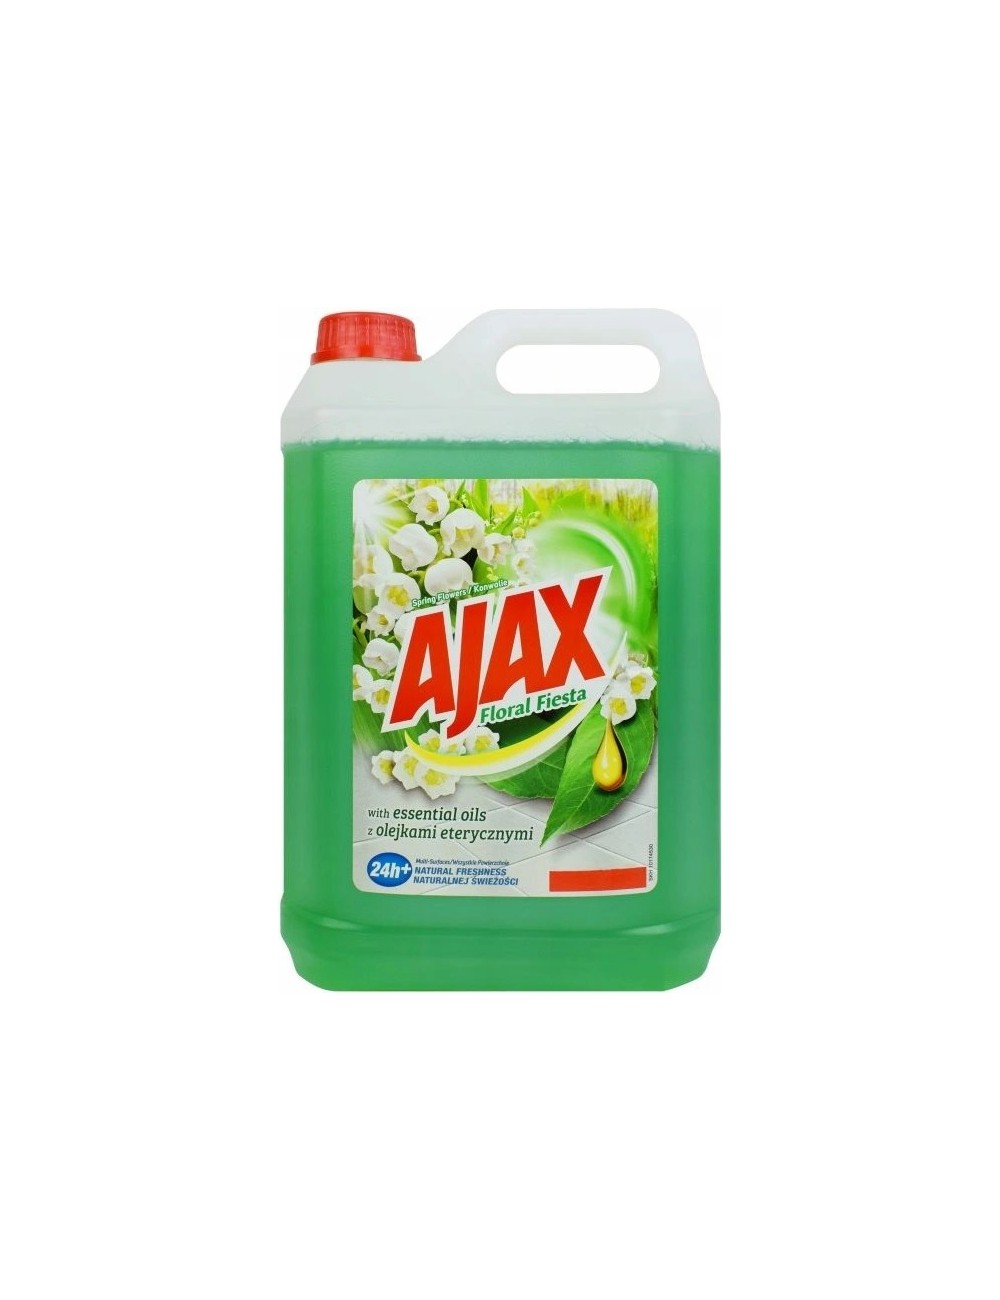 Ajax Konwaliowy Uniwersalny Płyn Do Mycia 5L